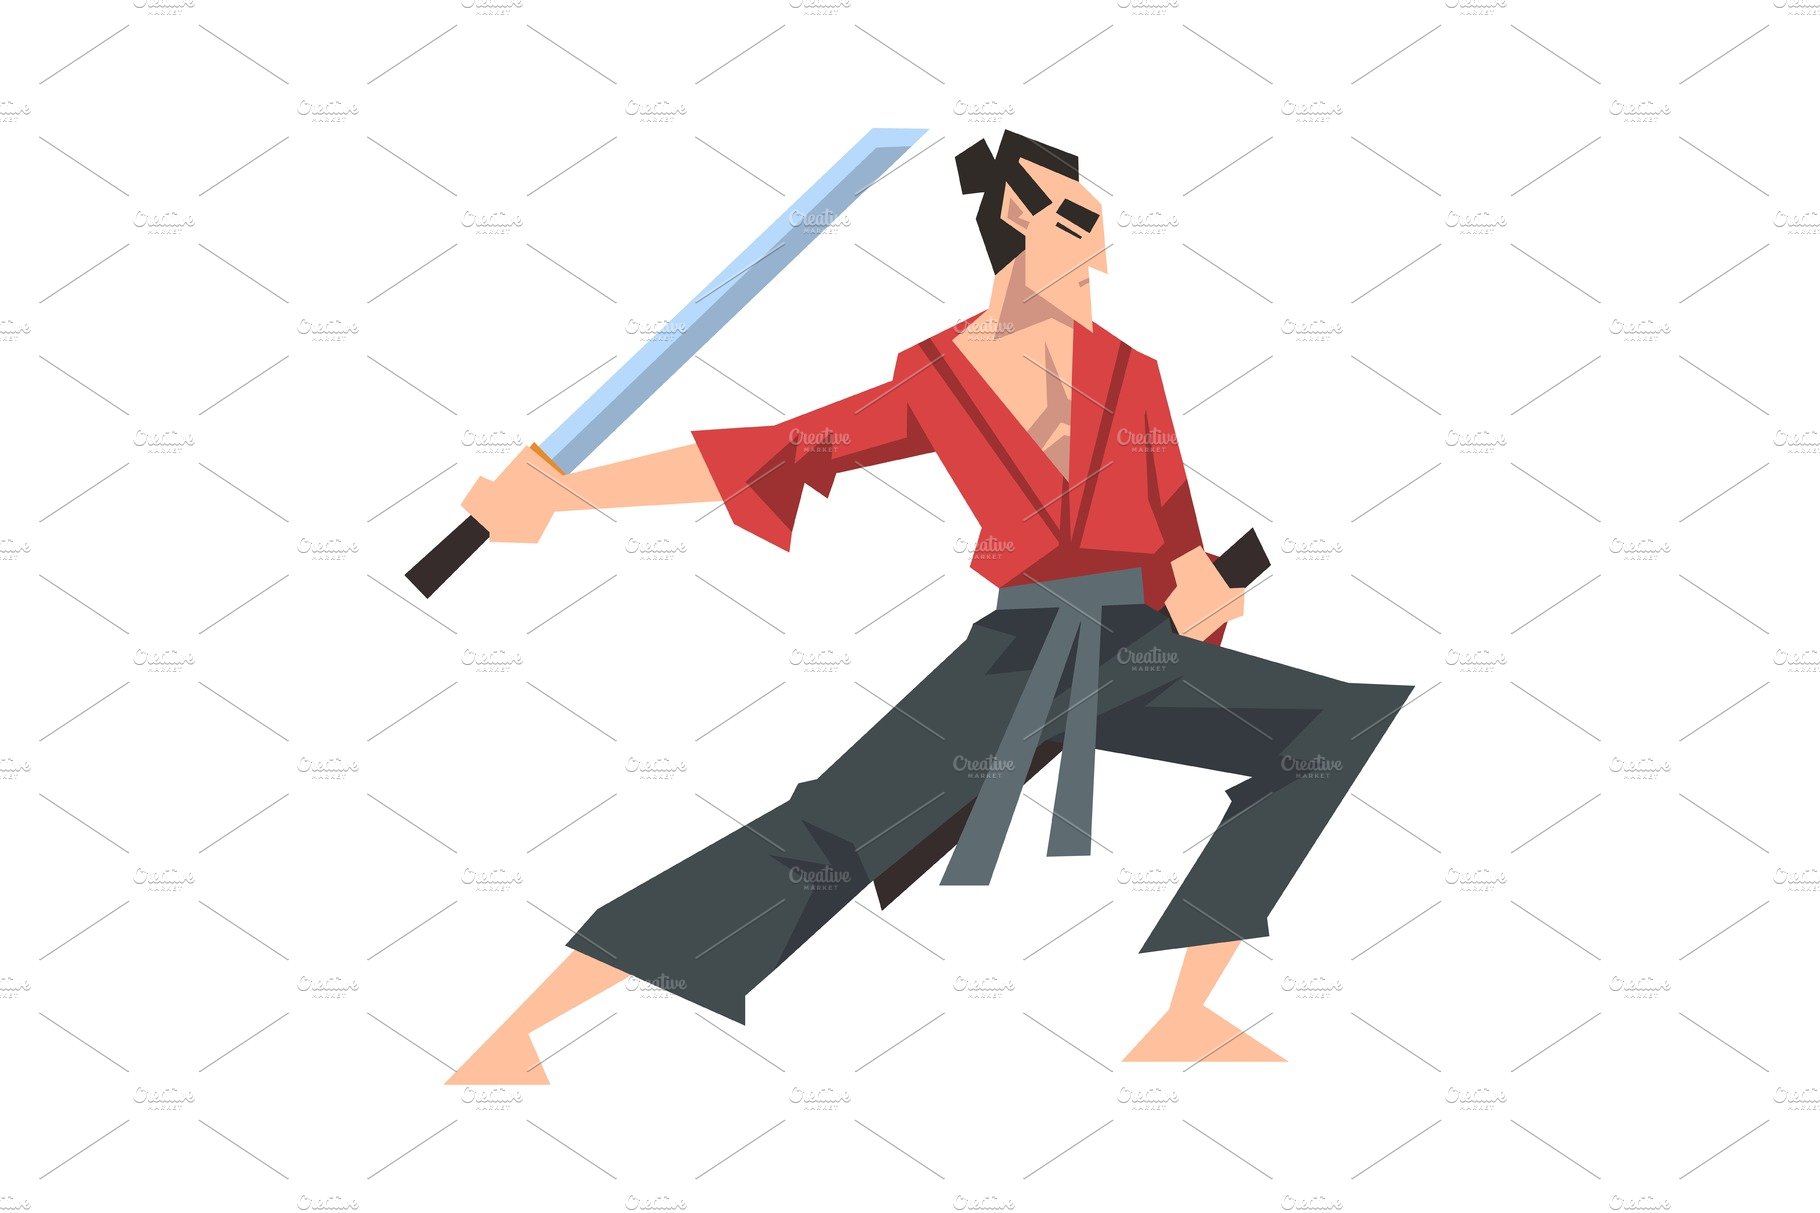 samurai fight poses